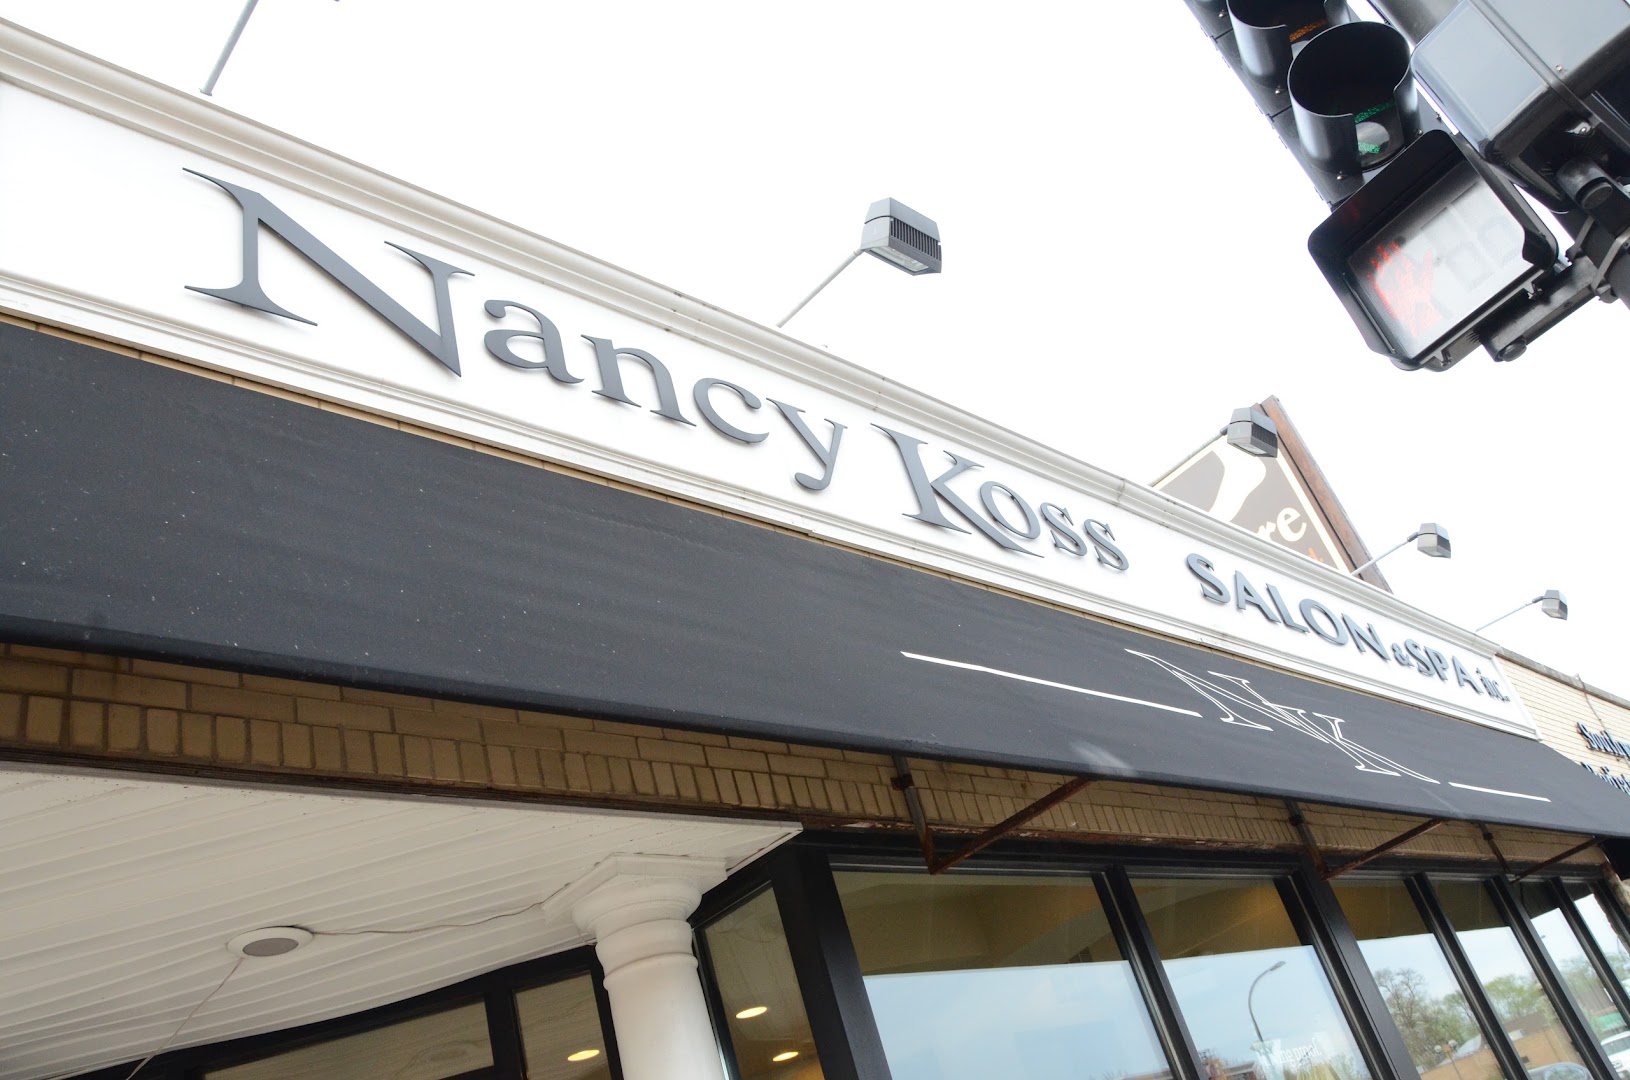 Nancy Koss Salon